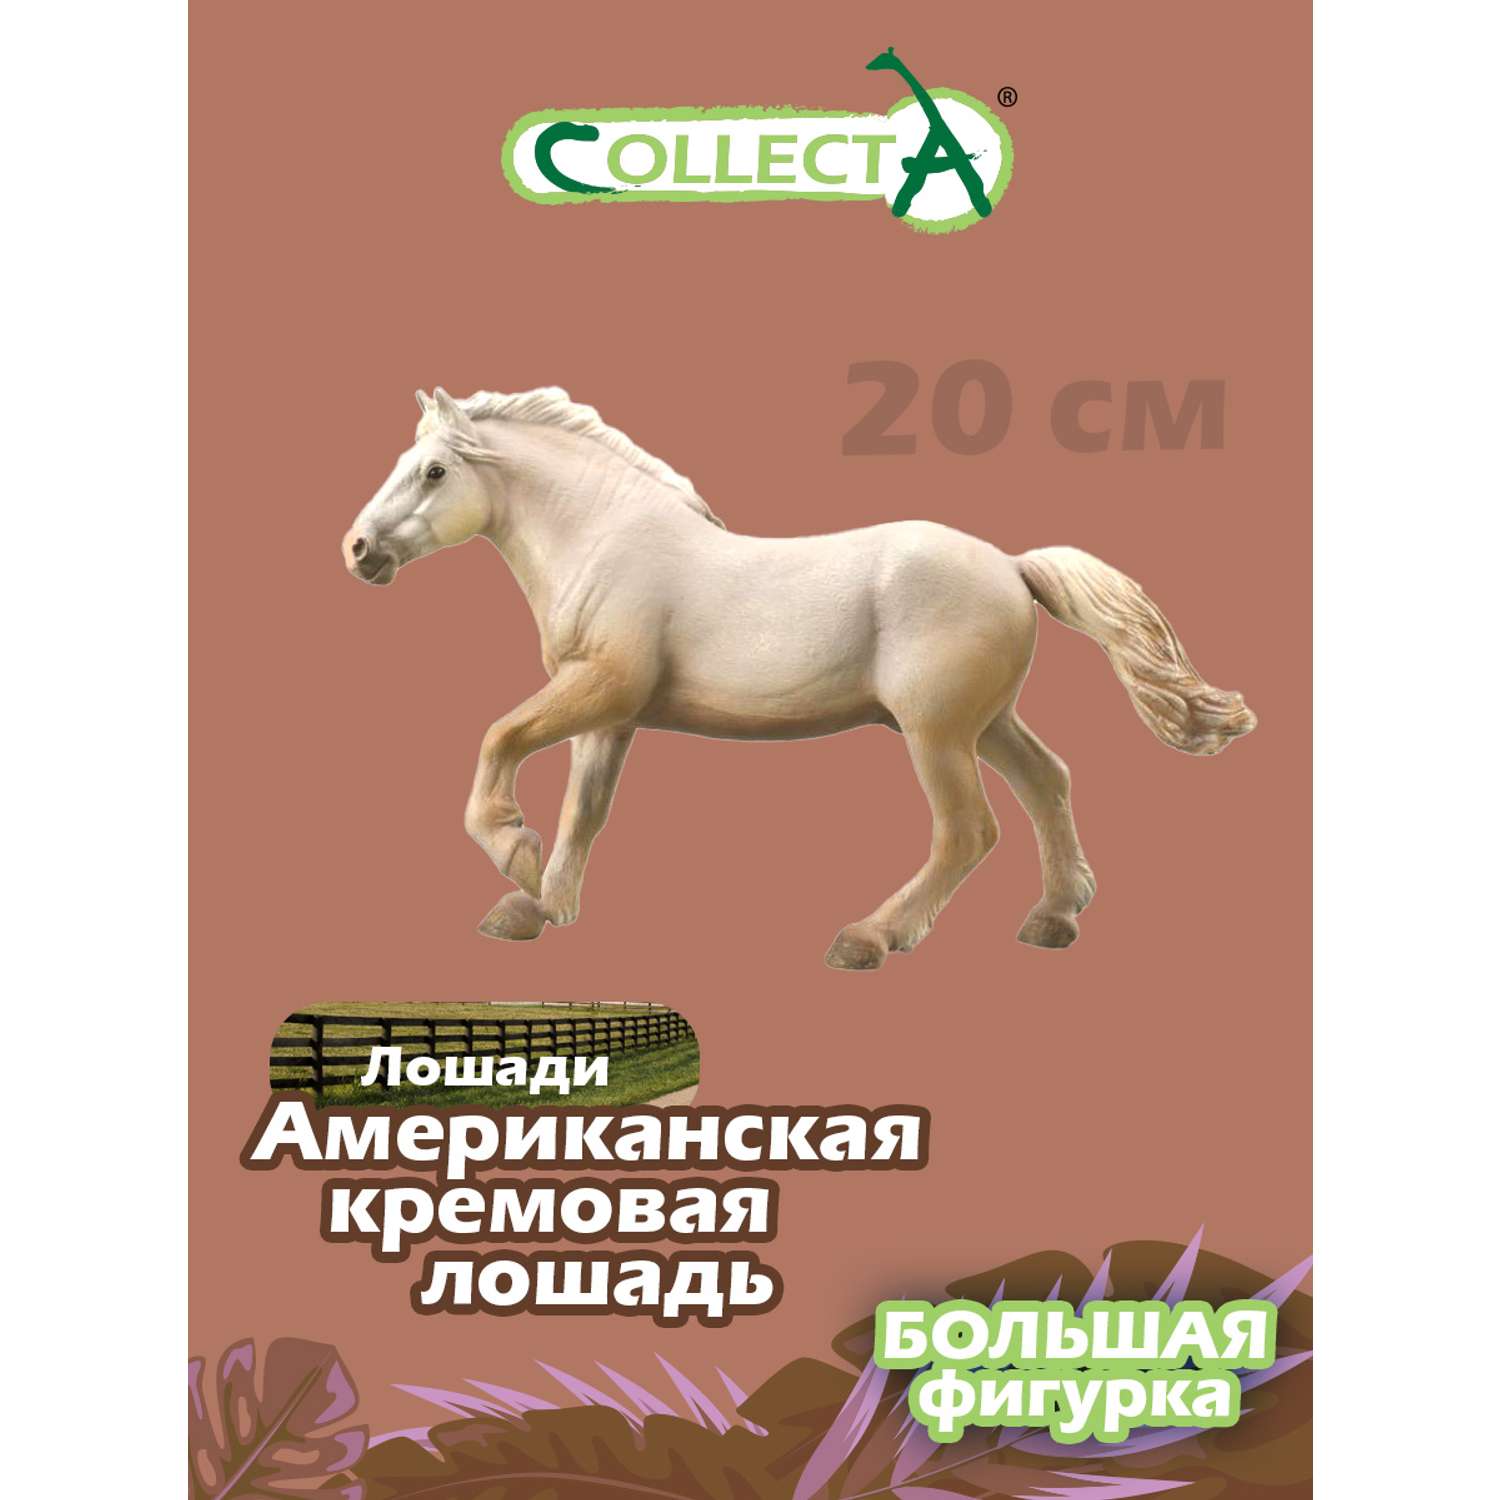 Фигурка животного Collecta Американская кремовая лошадь - фото 1